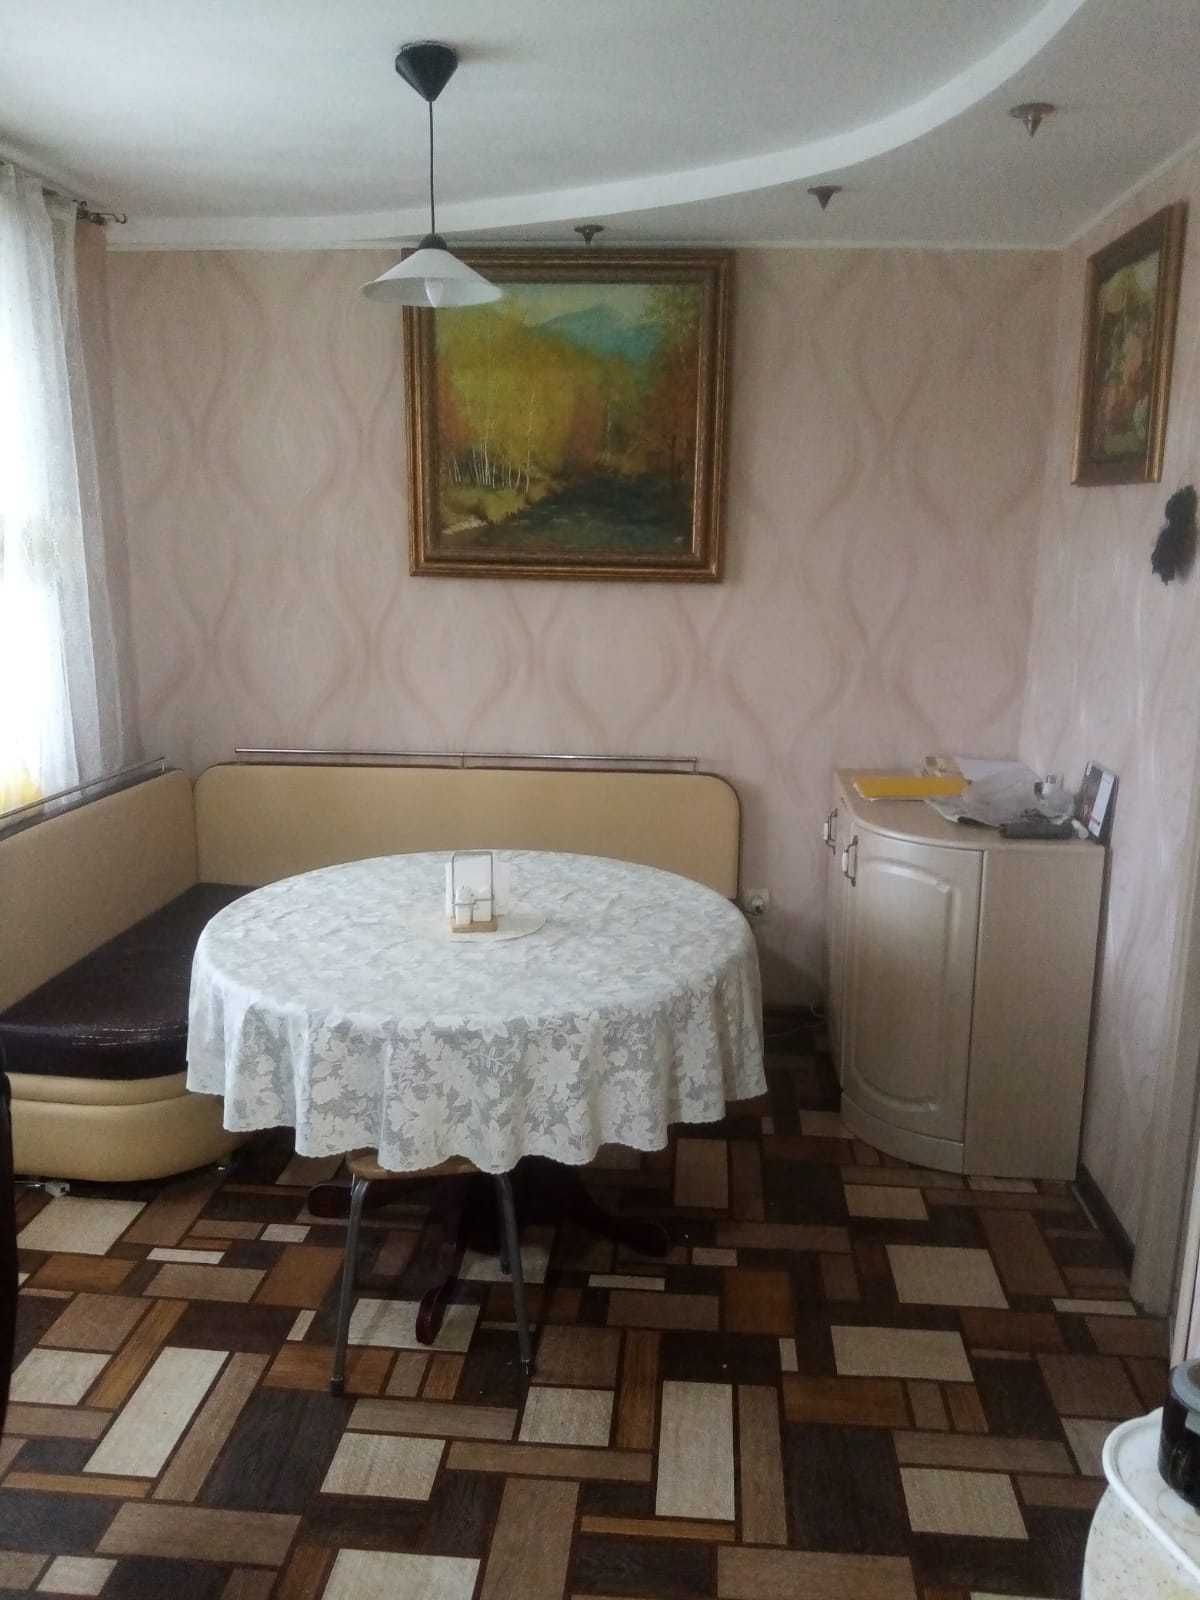 Квартира Зх комнатная 80м2 , кухня 16м2 в 42 доме, район Гагарина.